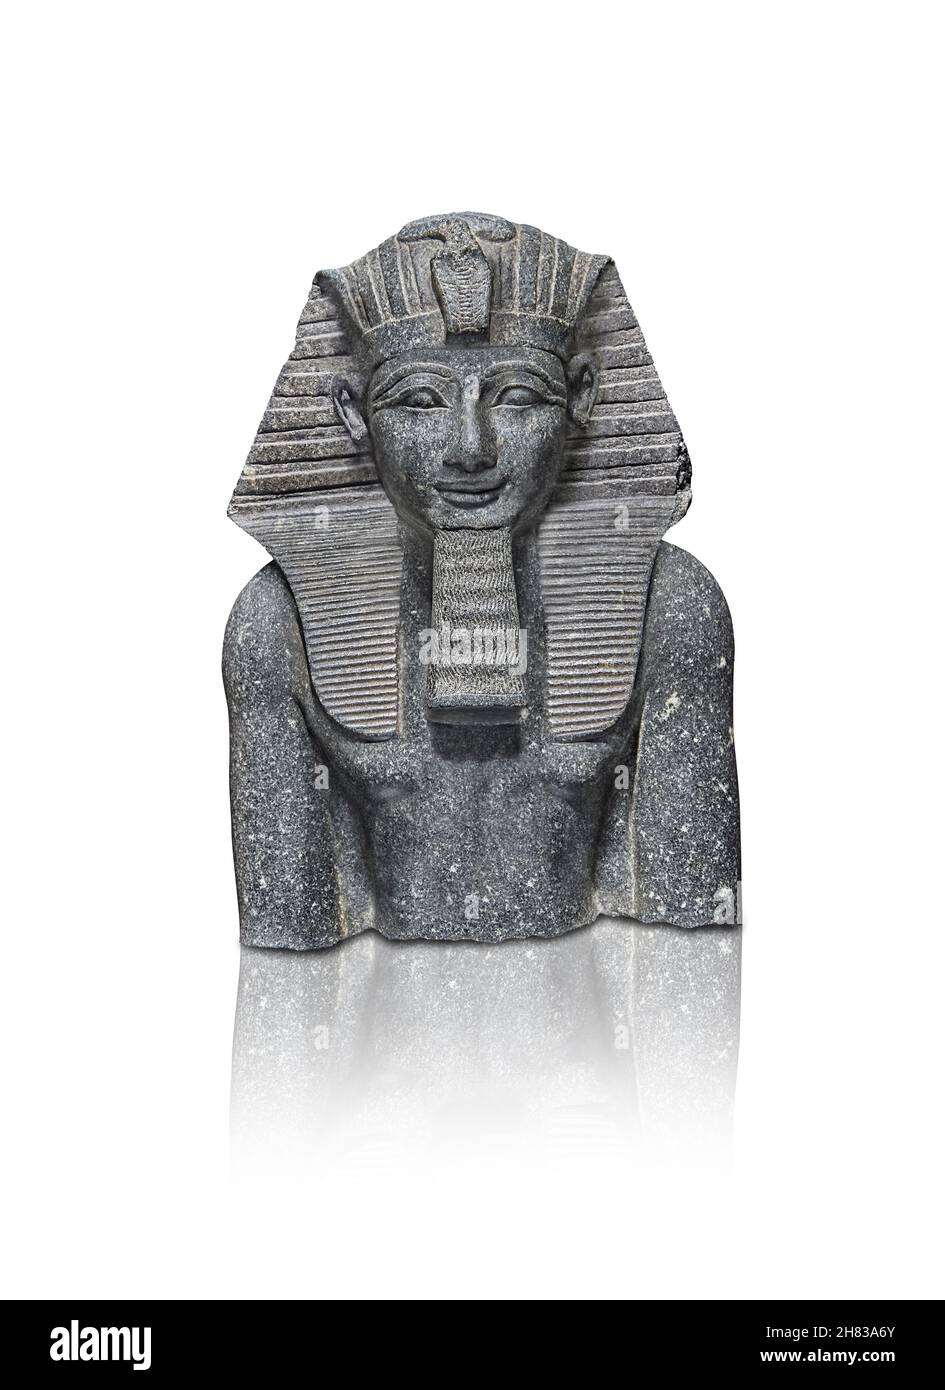 Alte ägyptische Statue von Tuthmosis III., 1504 - 1452 v. Chr., 18th Dynastie. Kunsthistorisches Museum Wien Inv. AS 70. Diorit. Trotz der Abwesenheit eines Stockfoto